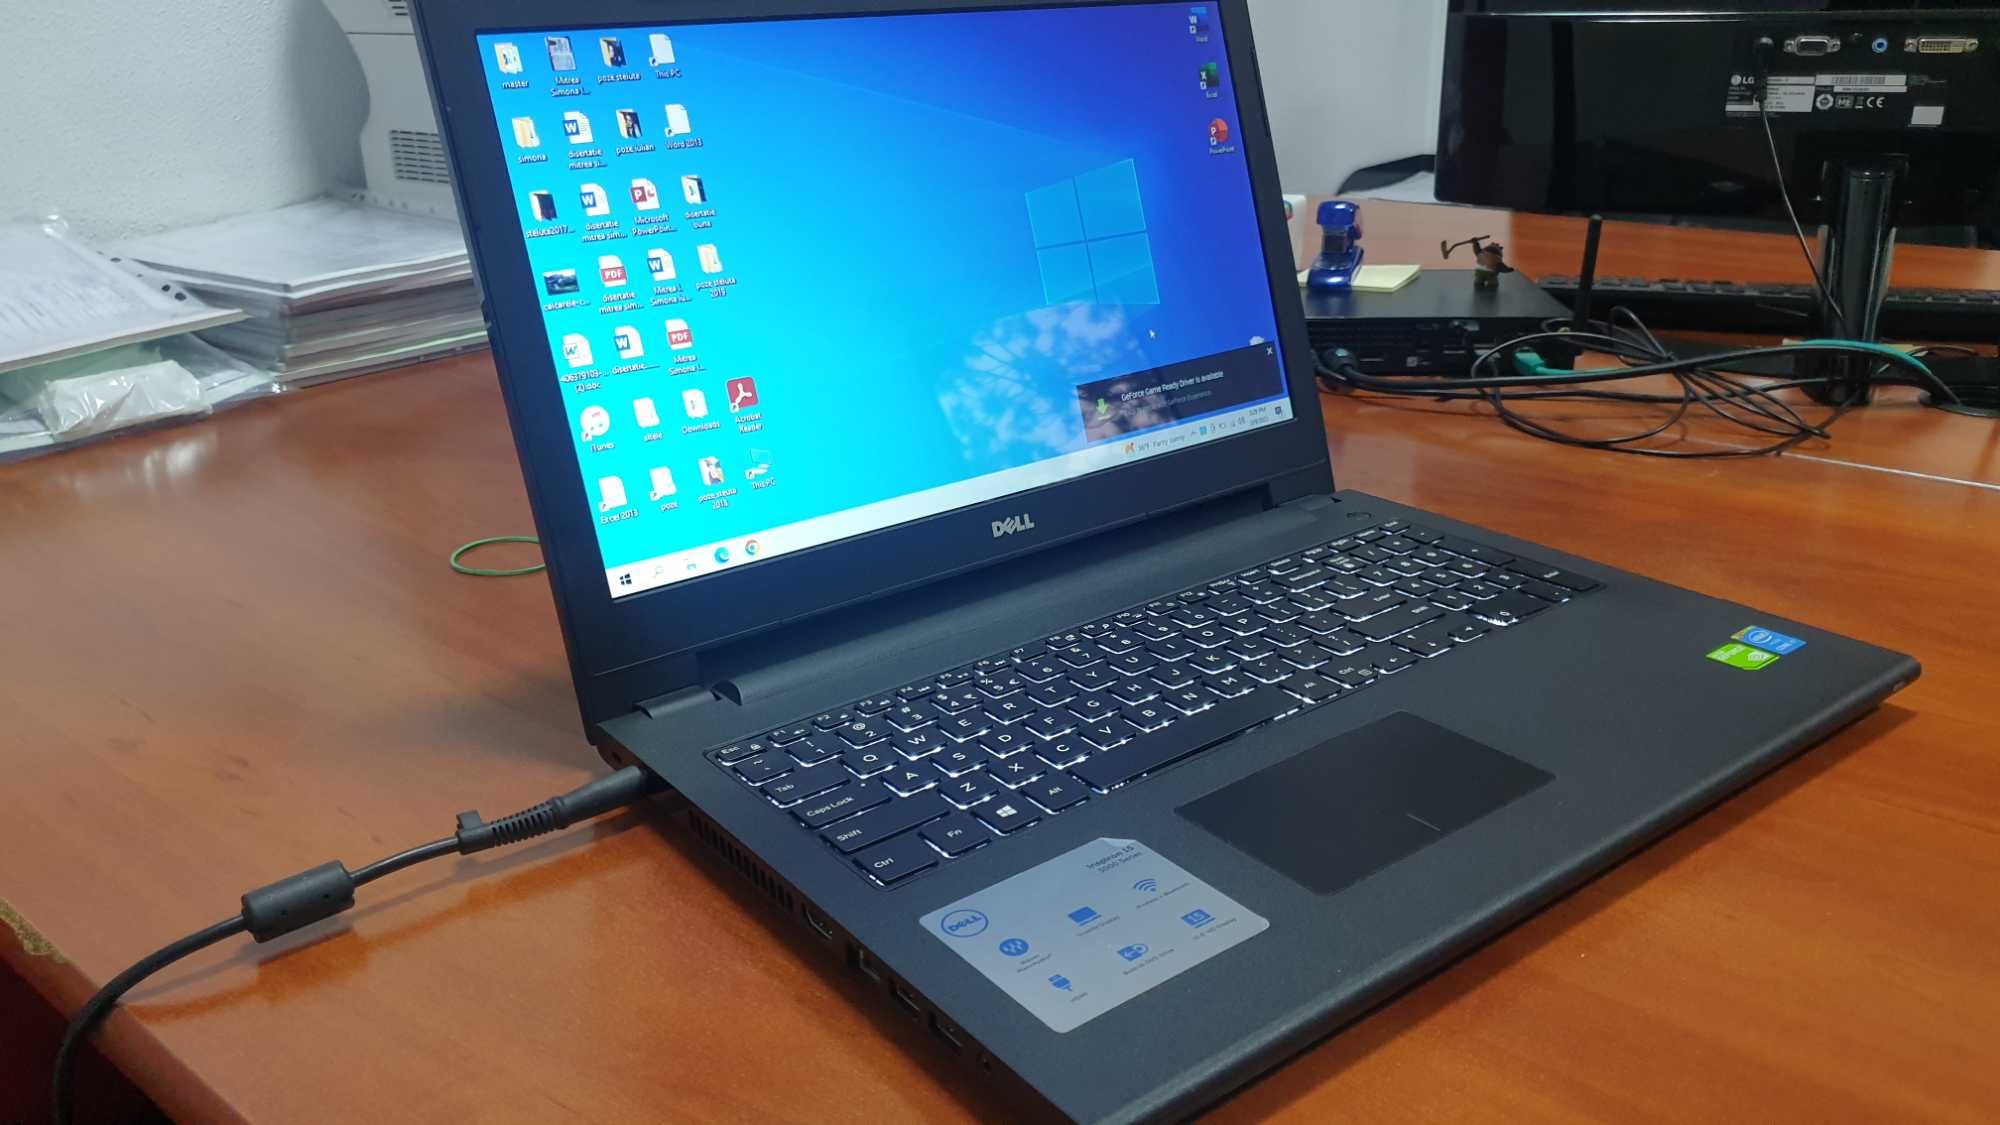 Laptop Dell Inspiron 15 seria 3000